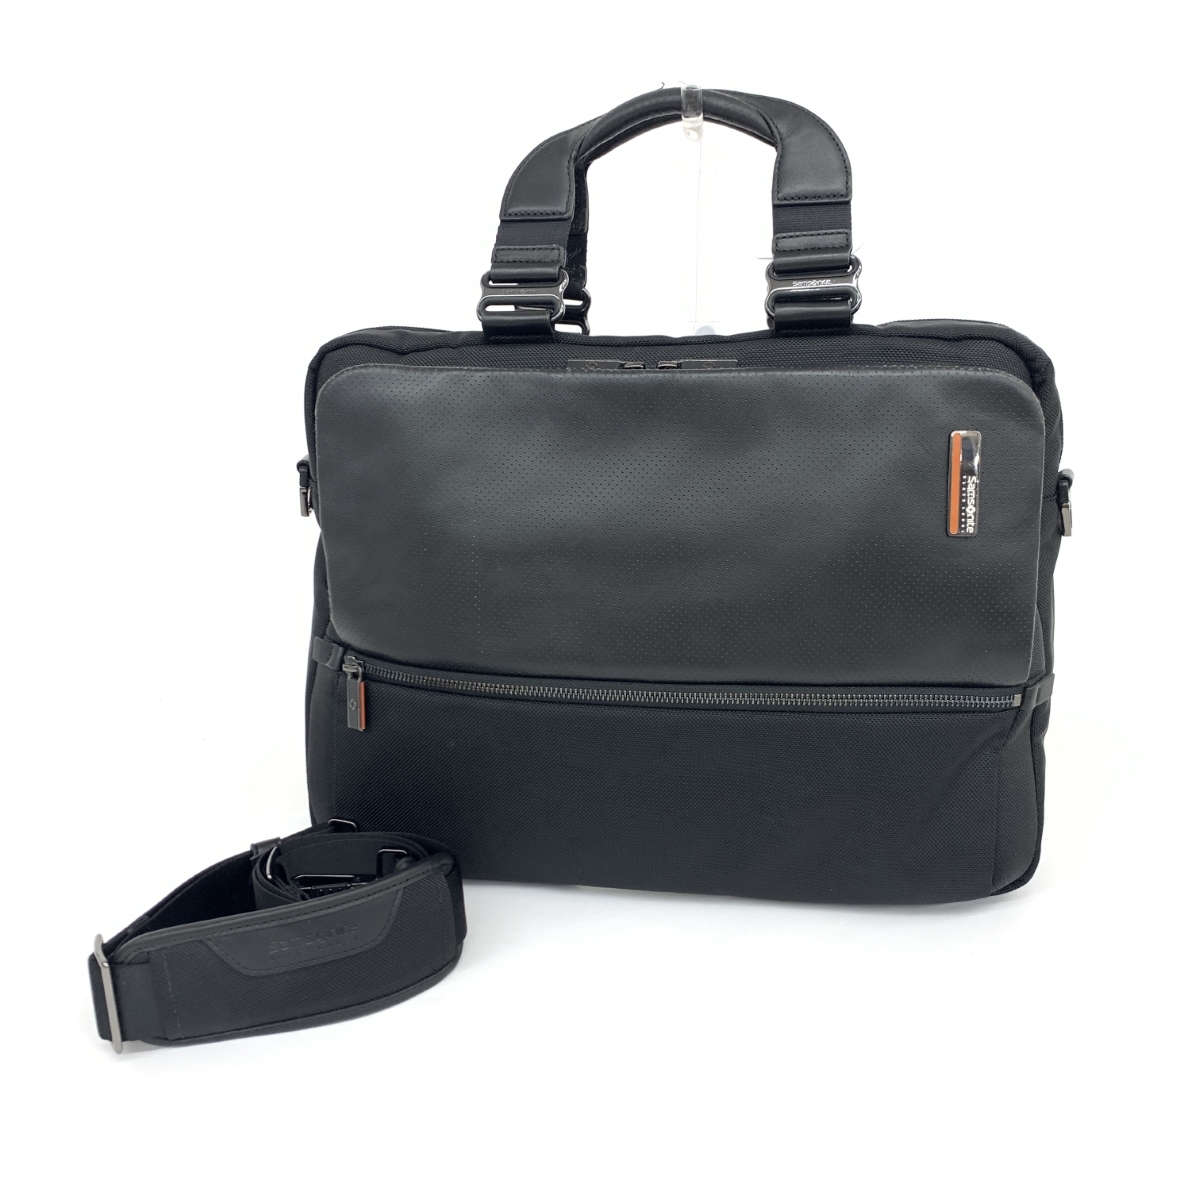 ◆Samsonite サムソナイト 2WAYビジネスバッグ◆ ブラック ナイロン メンズ ブリーフケース bag 書類鞄 A4